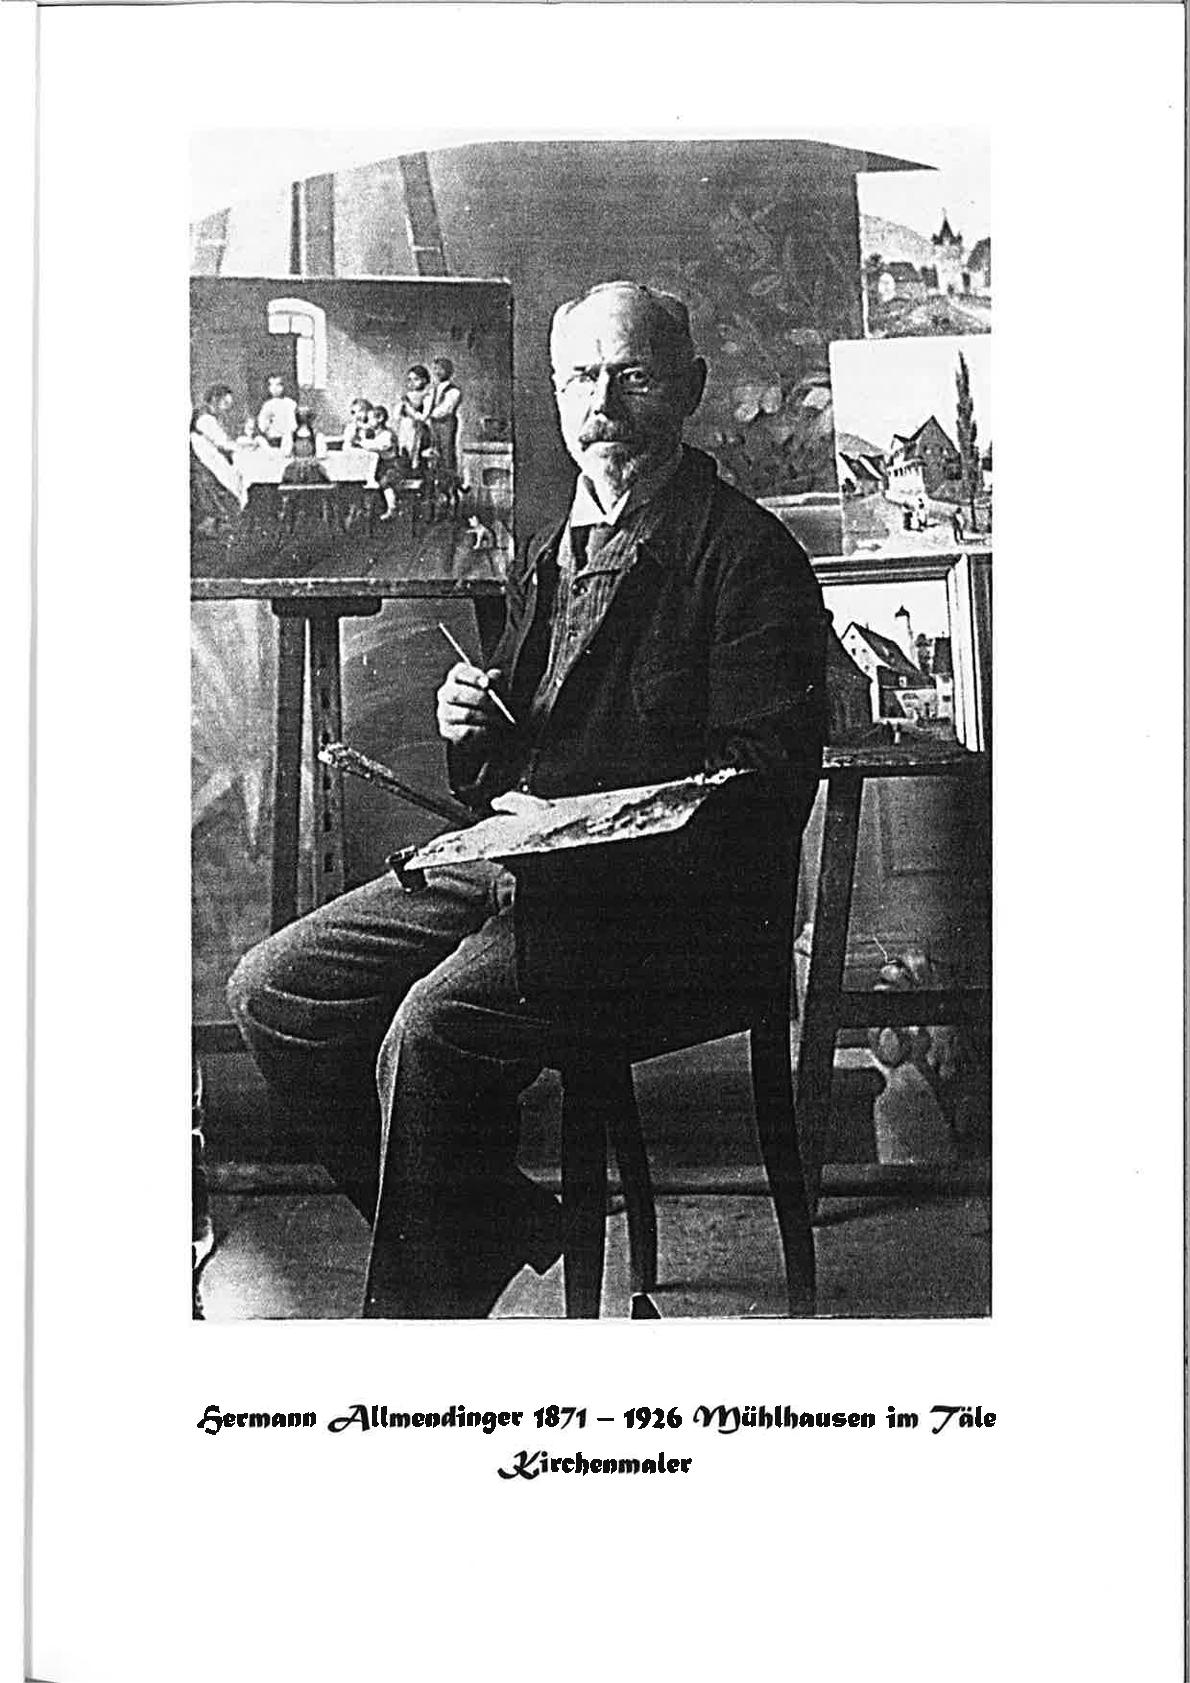  Hermann Allmendinger 